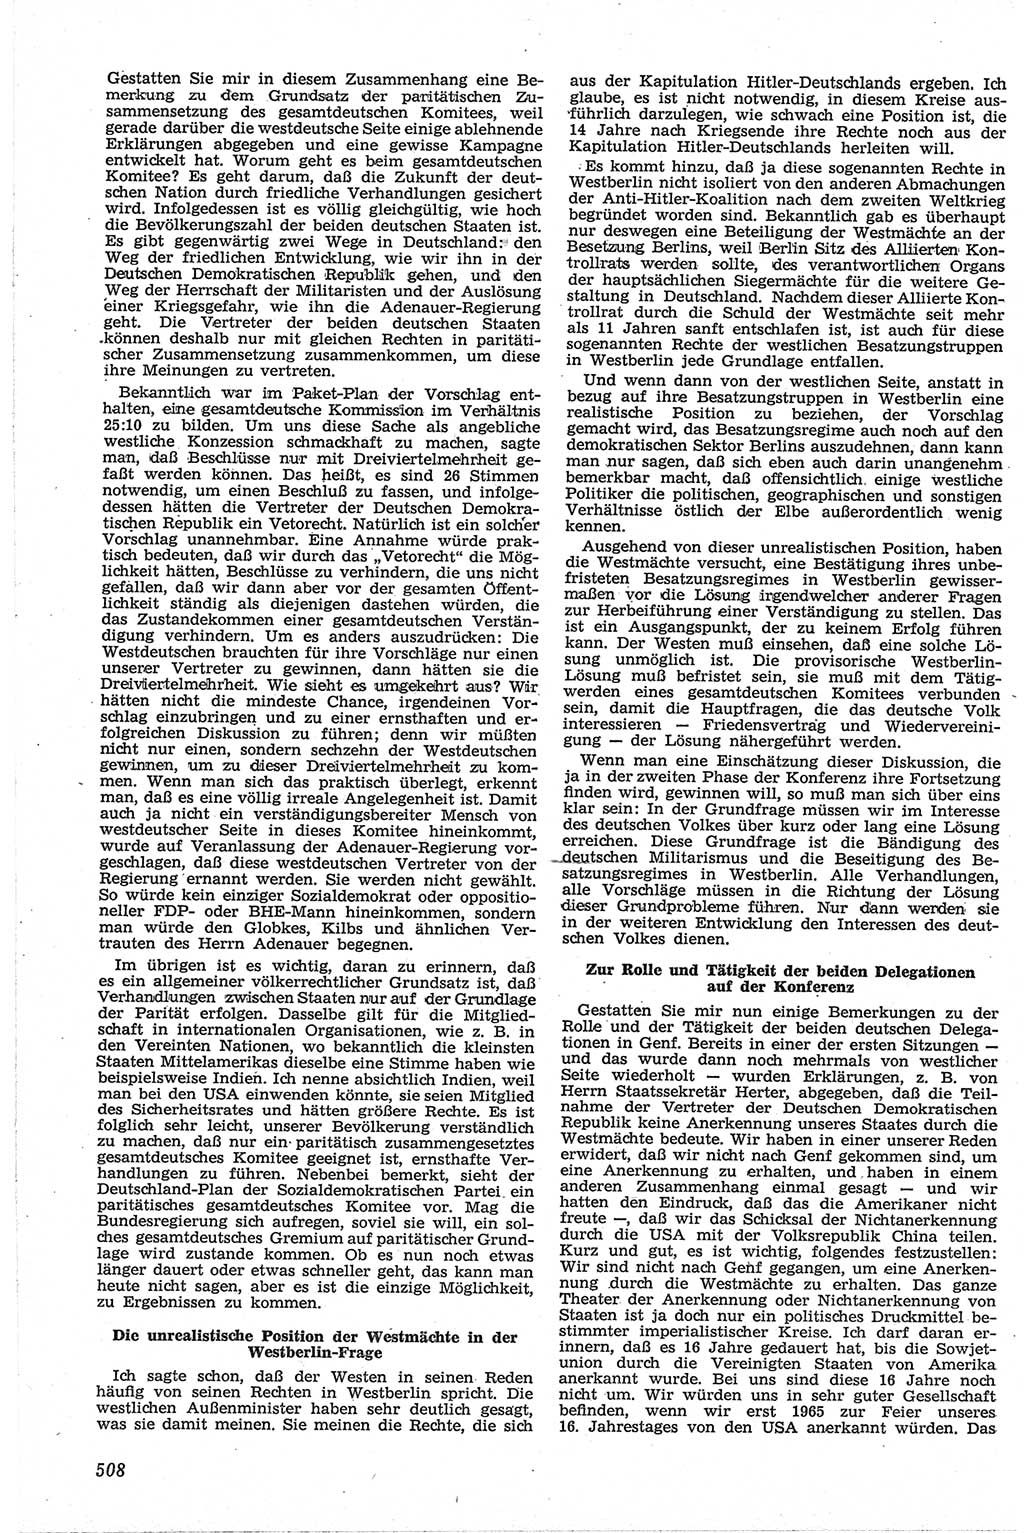 Neue Justiz (NJ), Zeitschrift für Recht und Rechtswissenschaft [Deutsche Demokratische Republik (DDR)], 13. Jahrgang 1959, Seite 508 (NJ DDR 1959, S. 508)